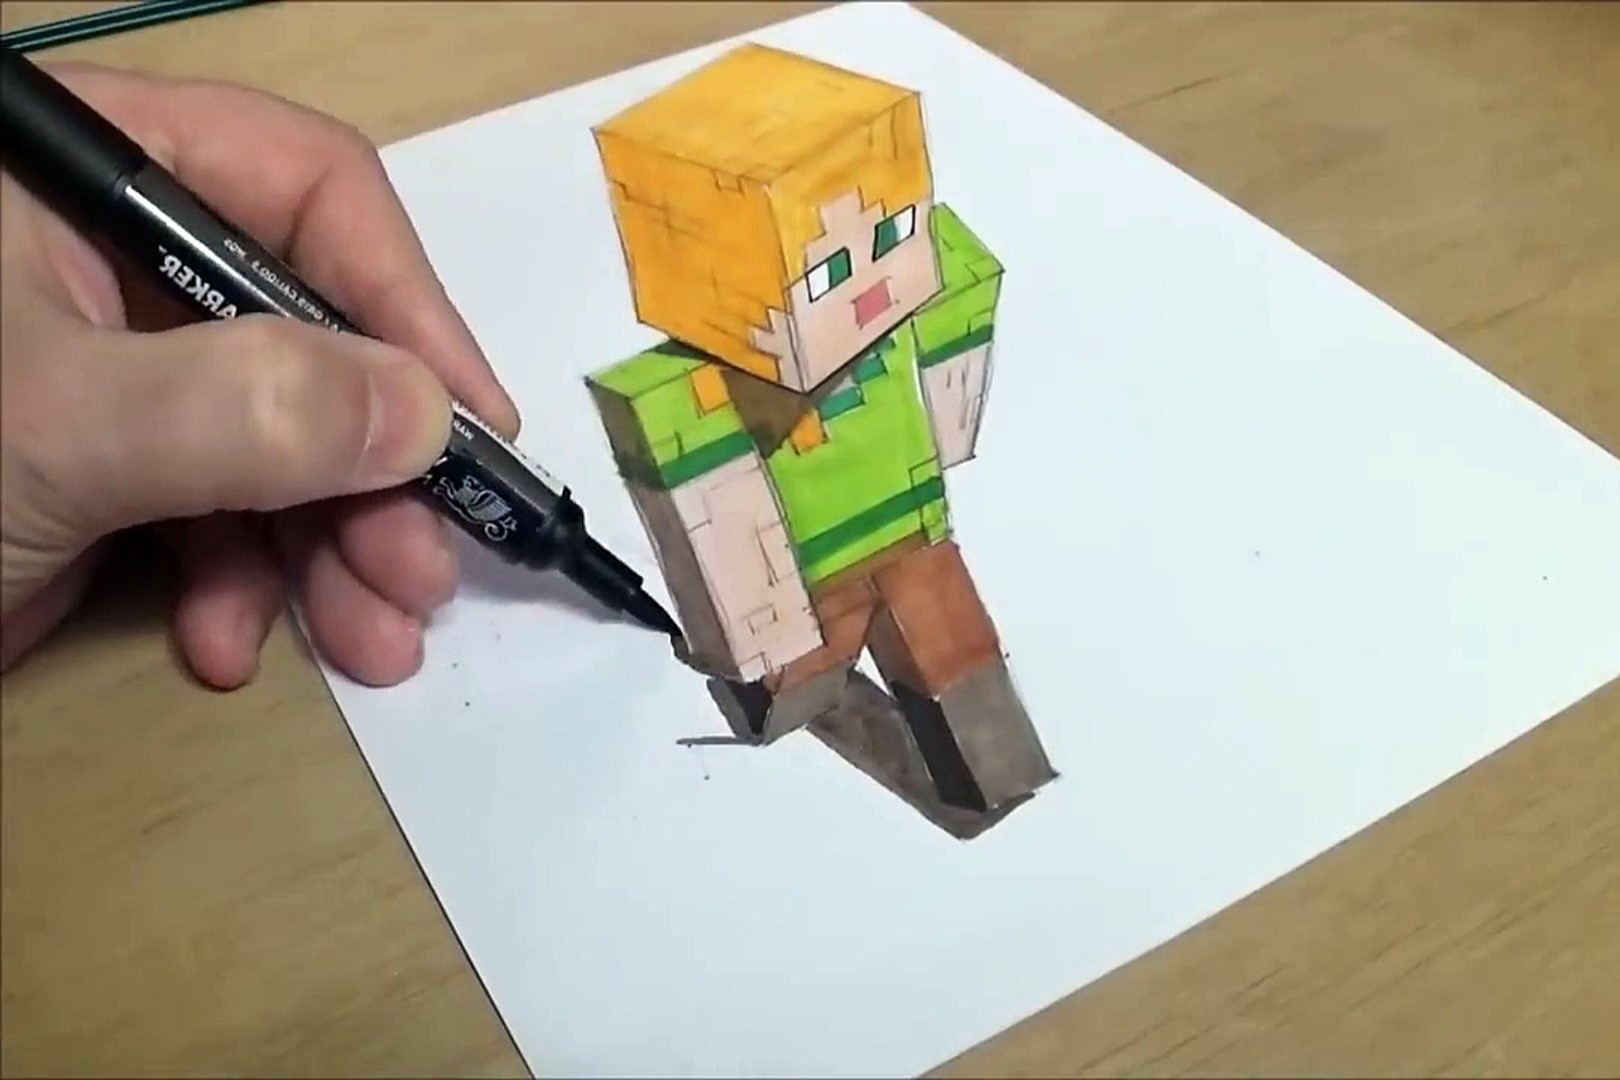 How To Draw Minecraft